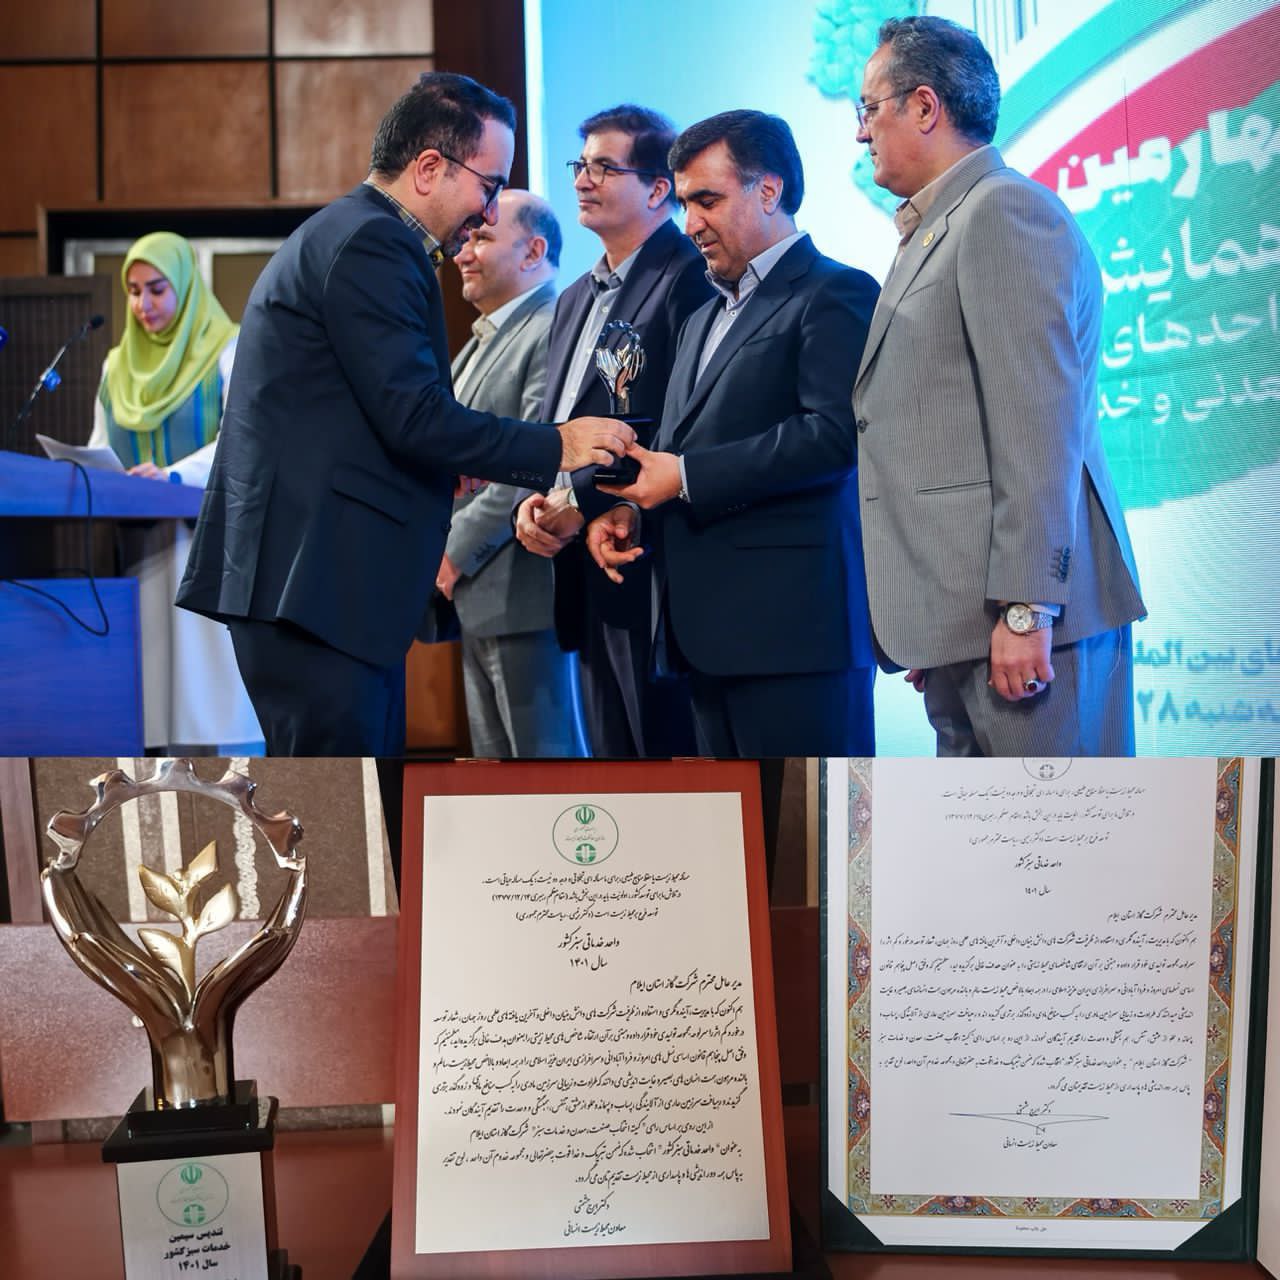 شرکت گاز استان ایلام بعنوان واحد خدماتی سبز کشور